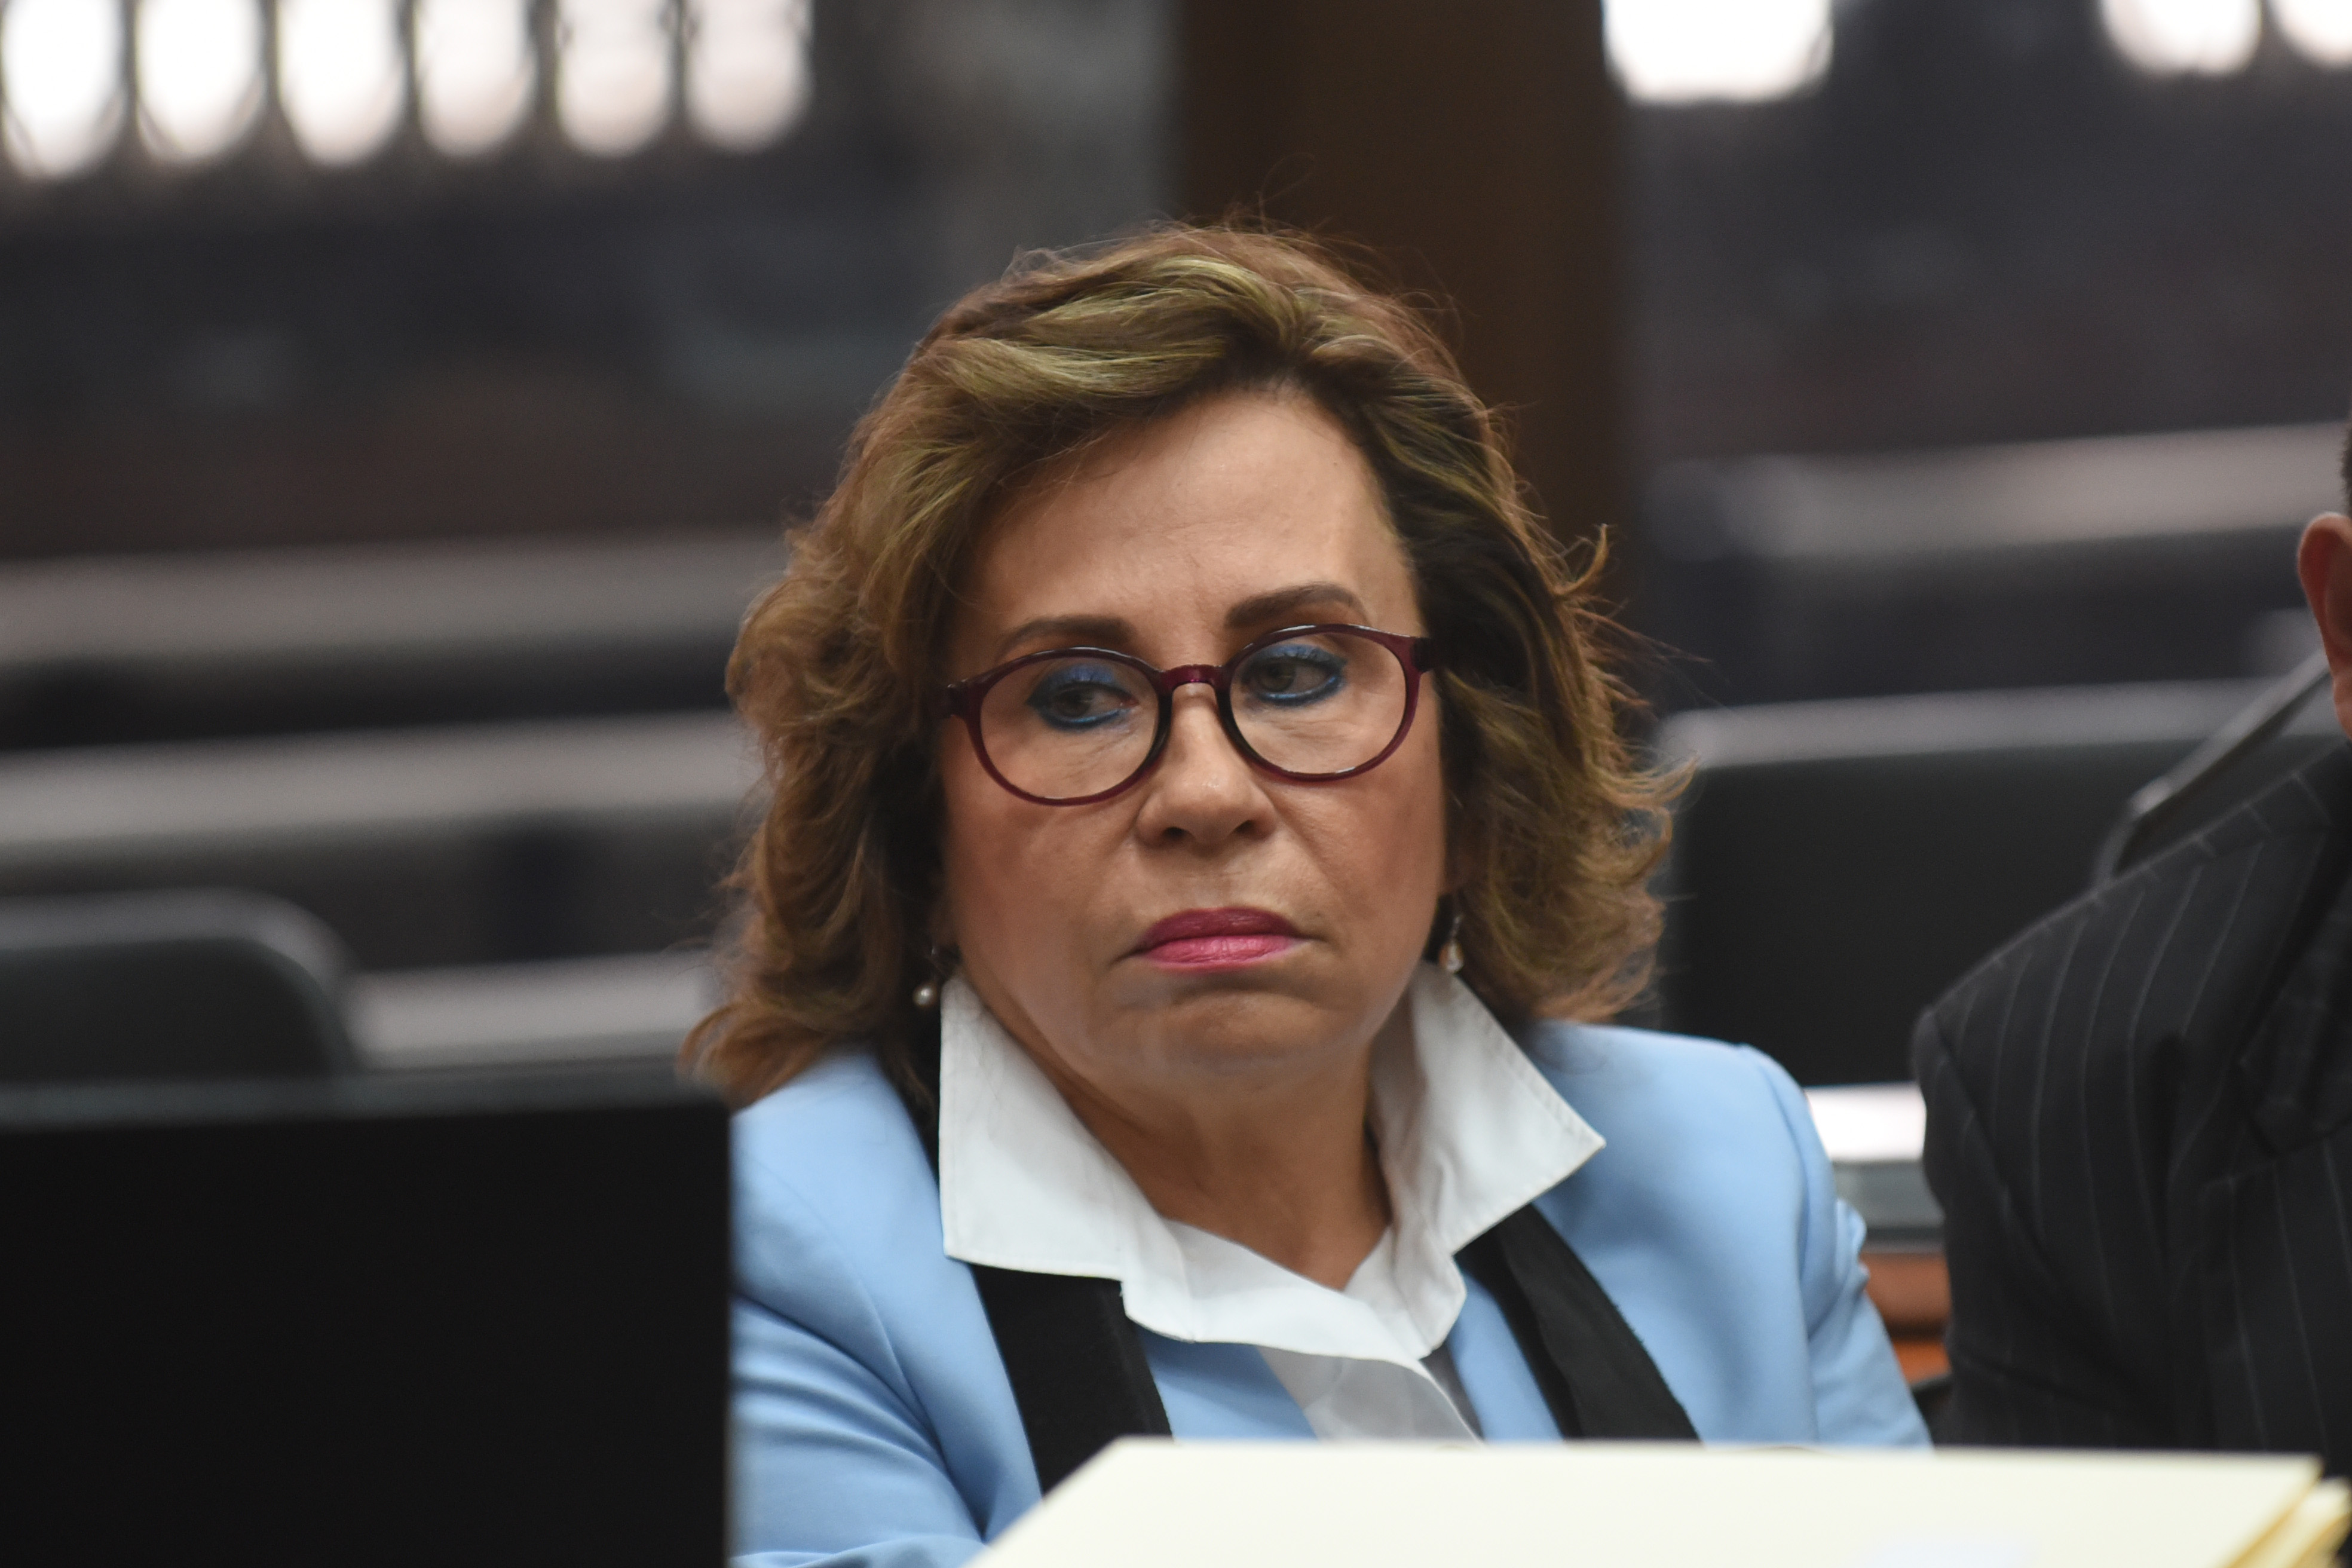 Sandra Torres No Será Trasladada A Un Hospital Su Partido Exige Un Trato Digno Y Juicio Justo Cnn 